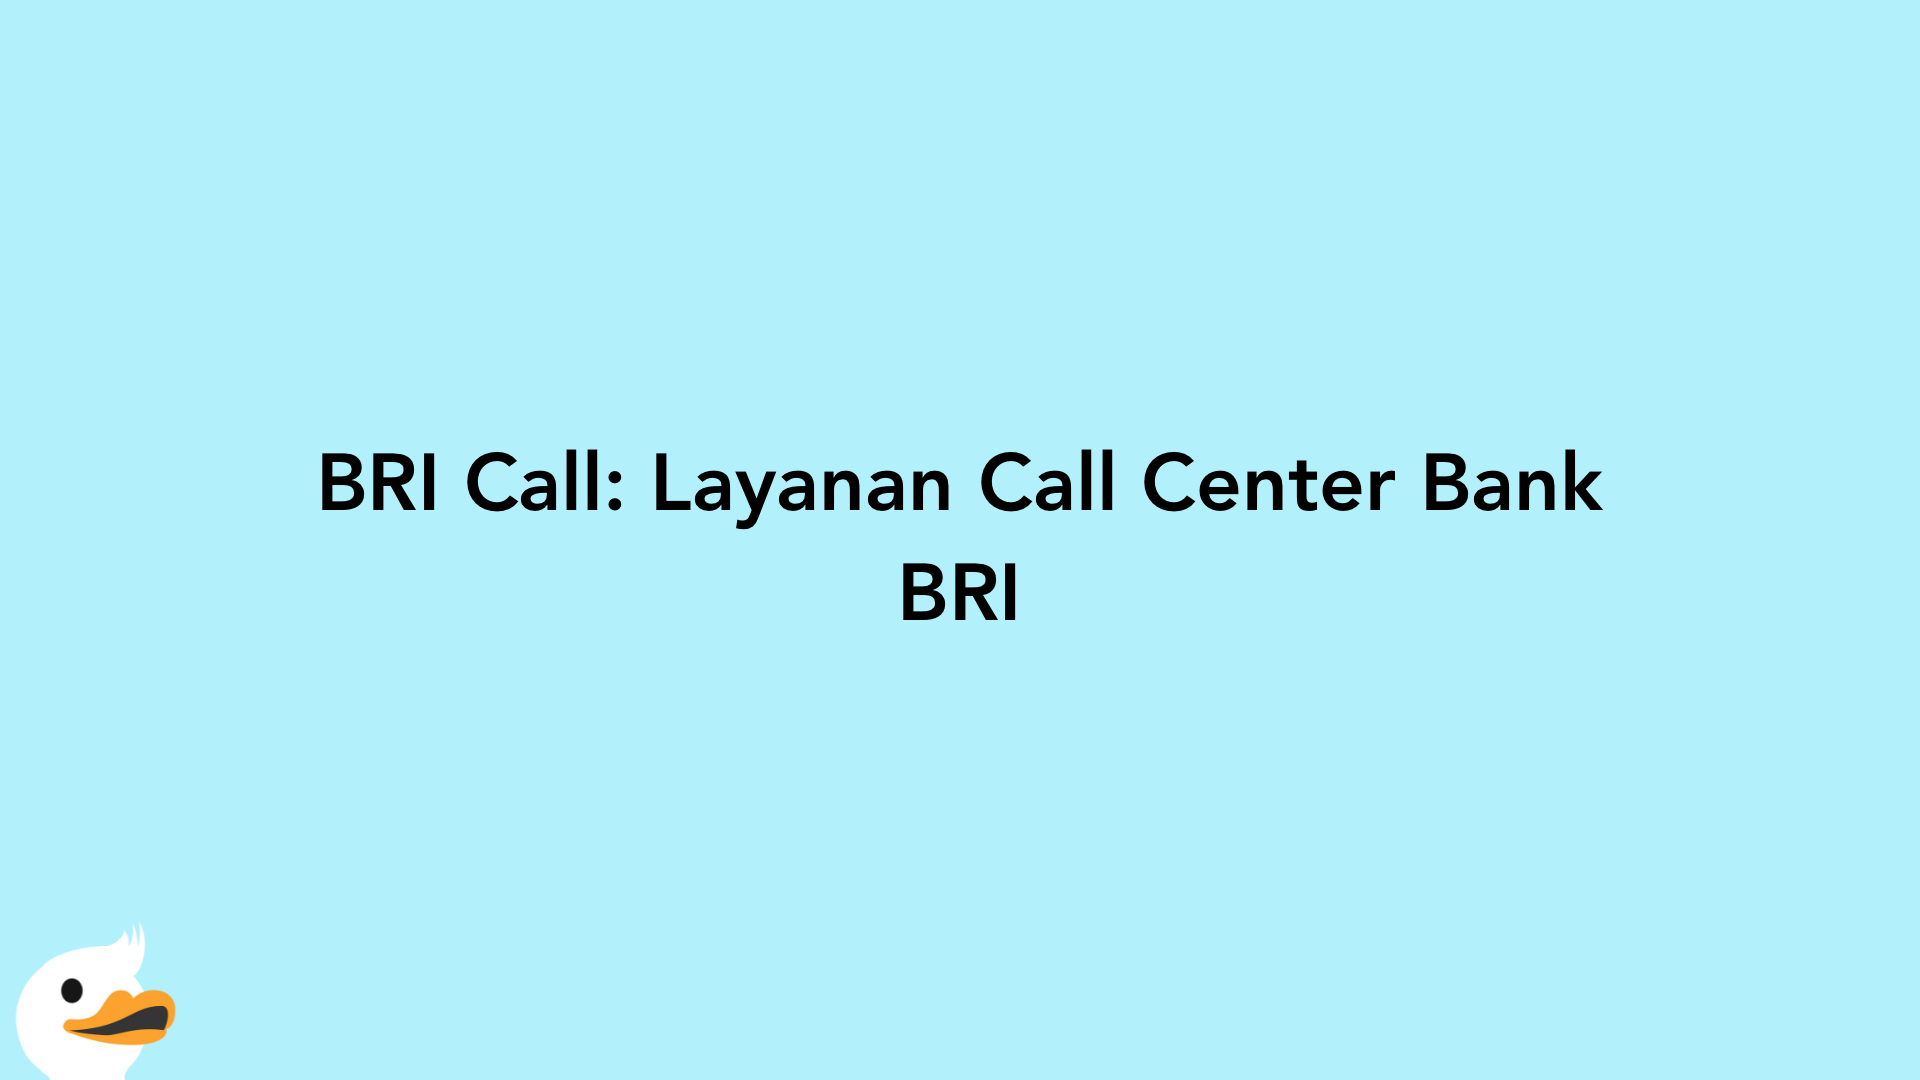 BRI Call: Layanan Call Center Bank BRI